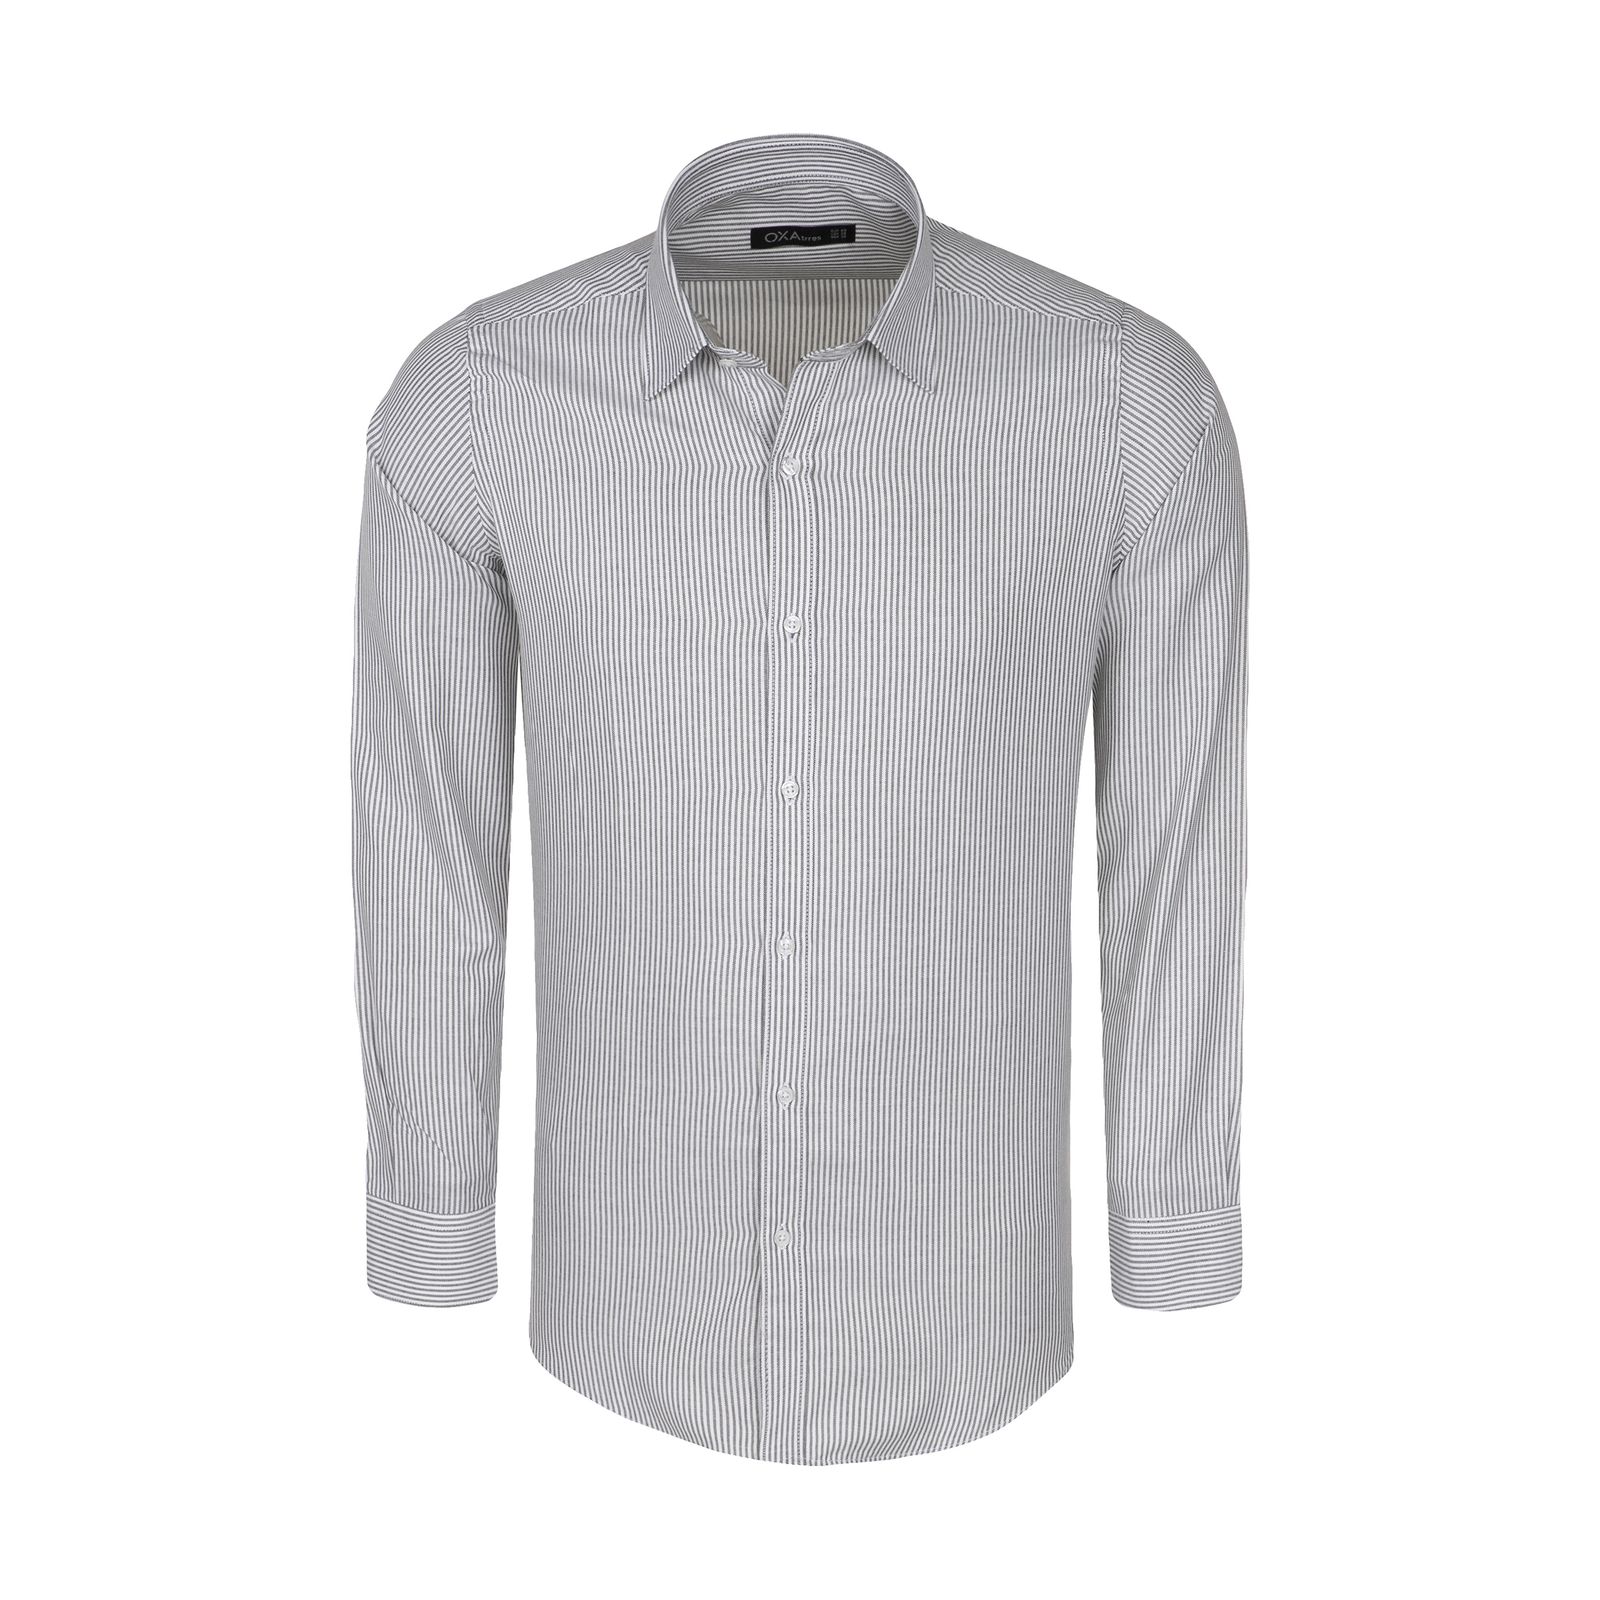 پیراهن مردانه اکزاترس مدل I012002002360003-002 -  - 1